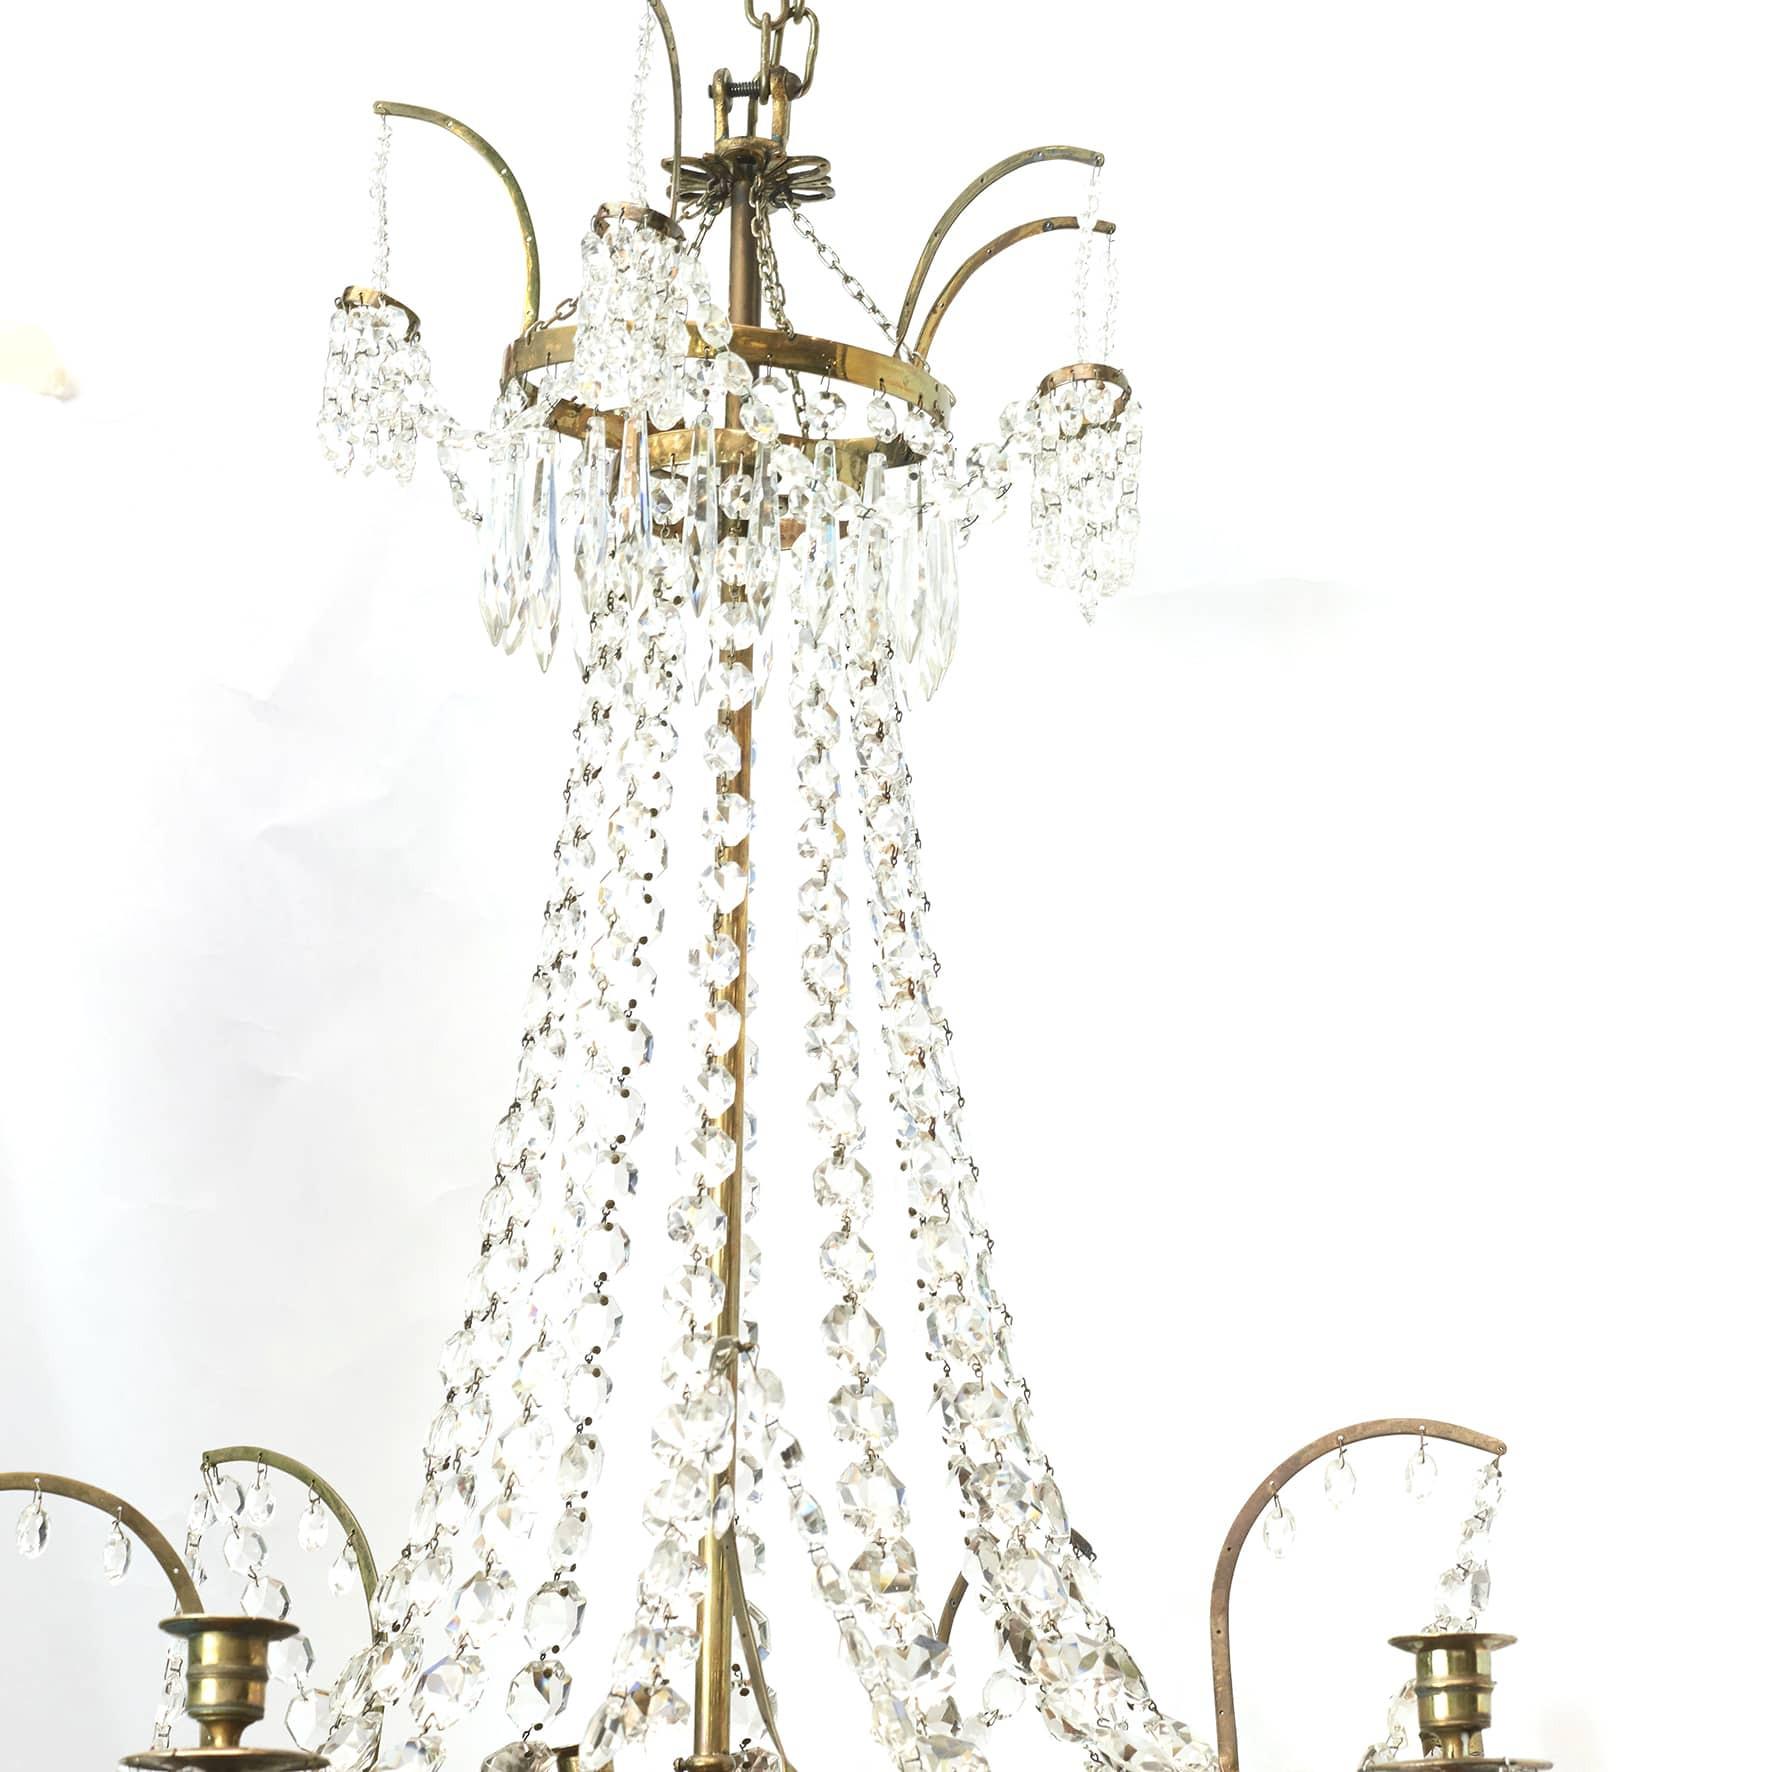 Eleganter Louis XVI-Kronleuchter mit Kristallprismen.

Polierter Messingrahmen mit 6 Lichtarmen und reduzierter Rundung mit blauem Glas.
Dänemark 1780 - 1800.

Kann elektrifiziert werden.